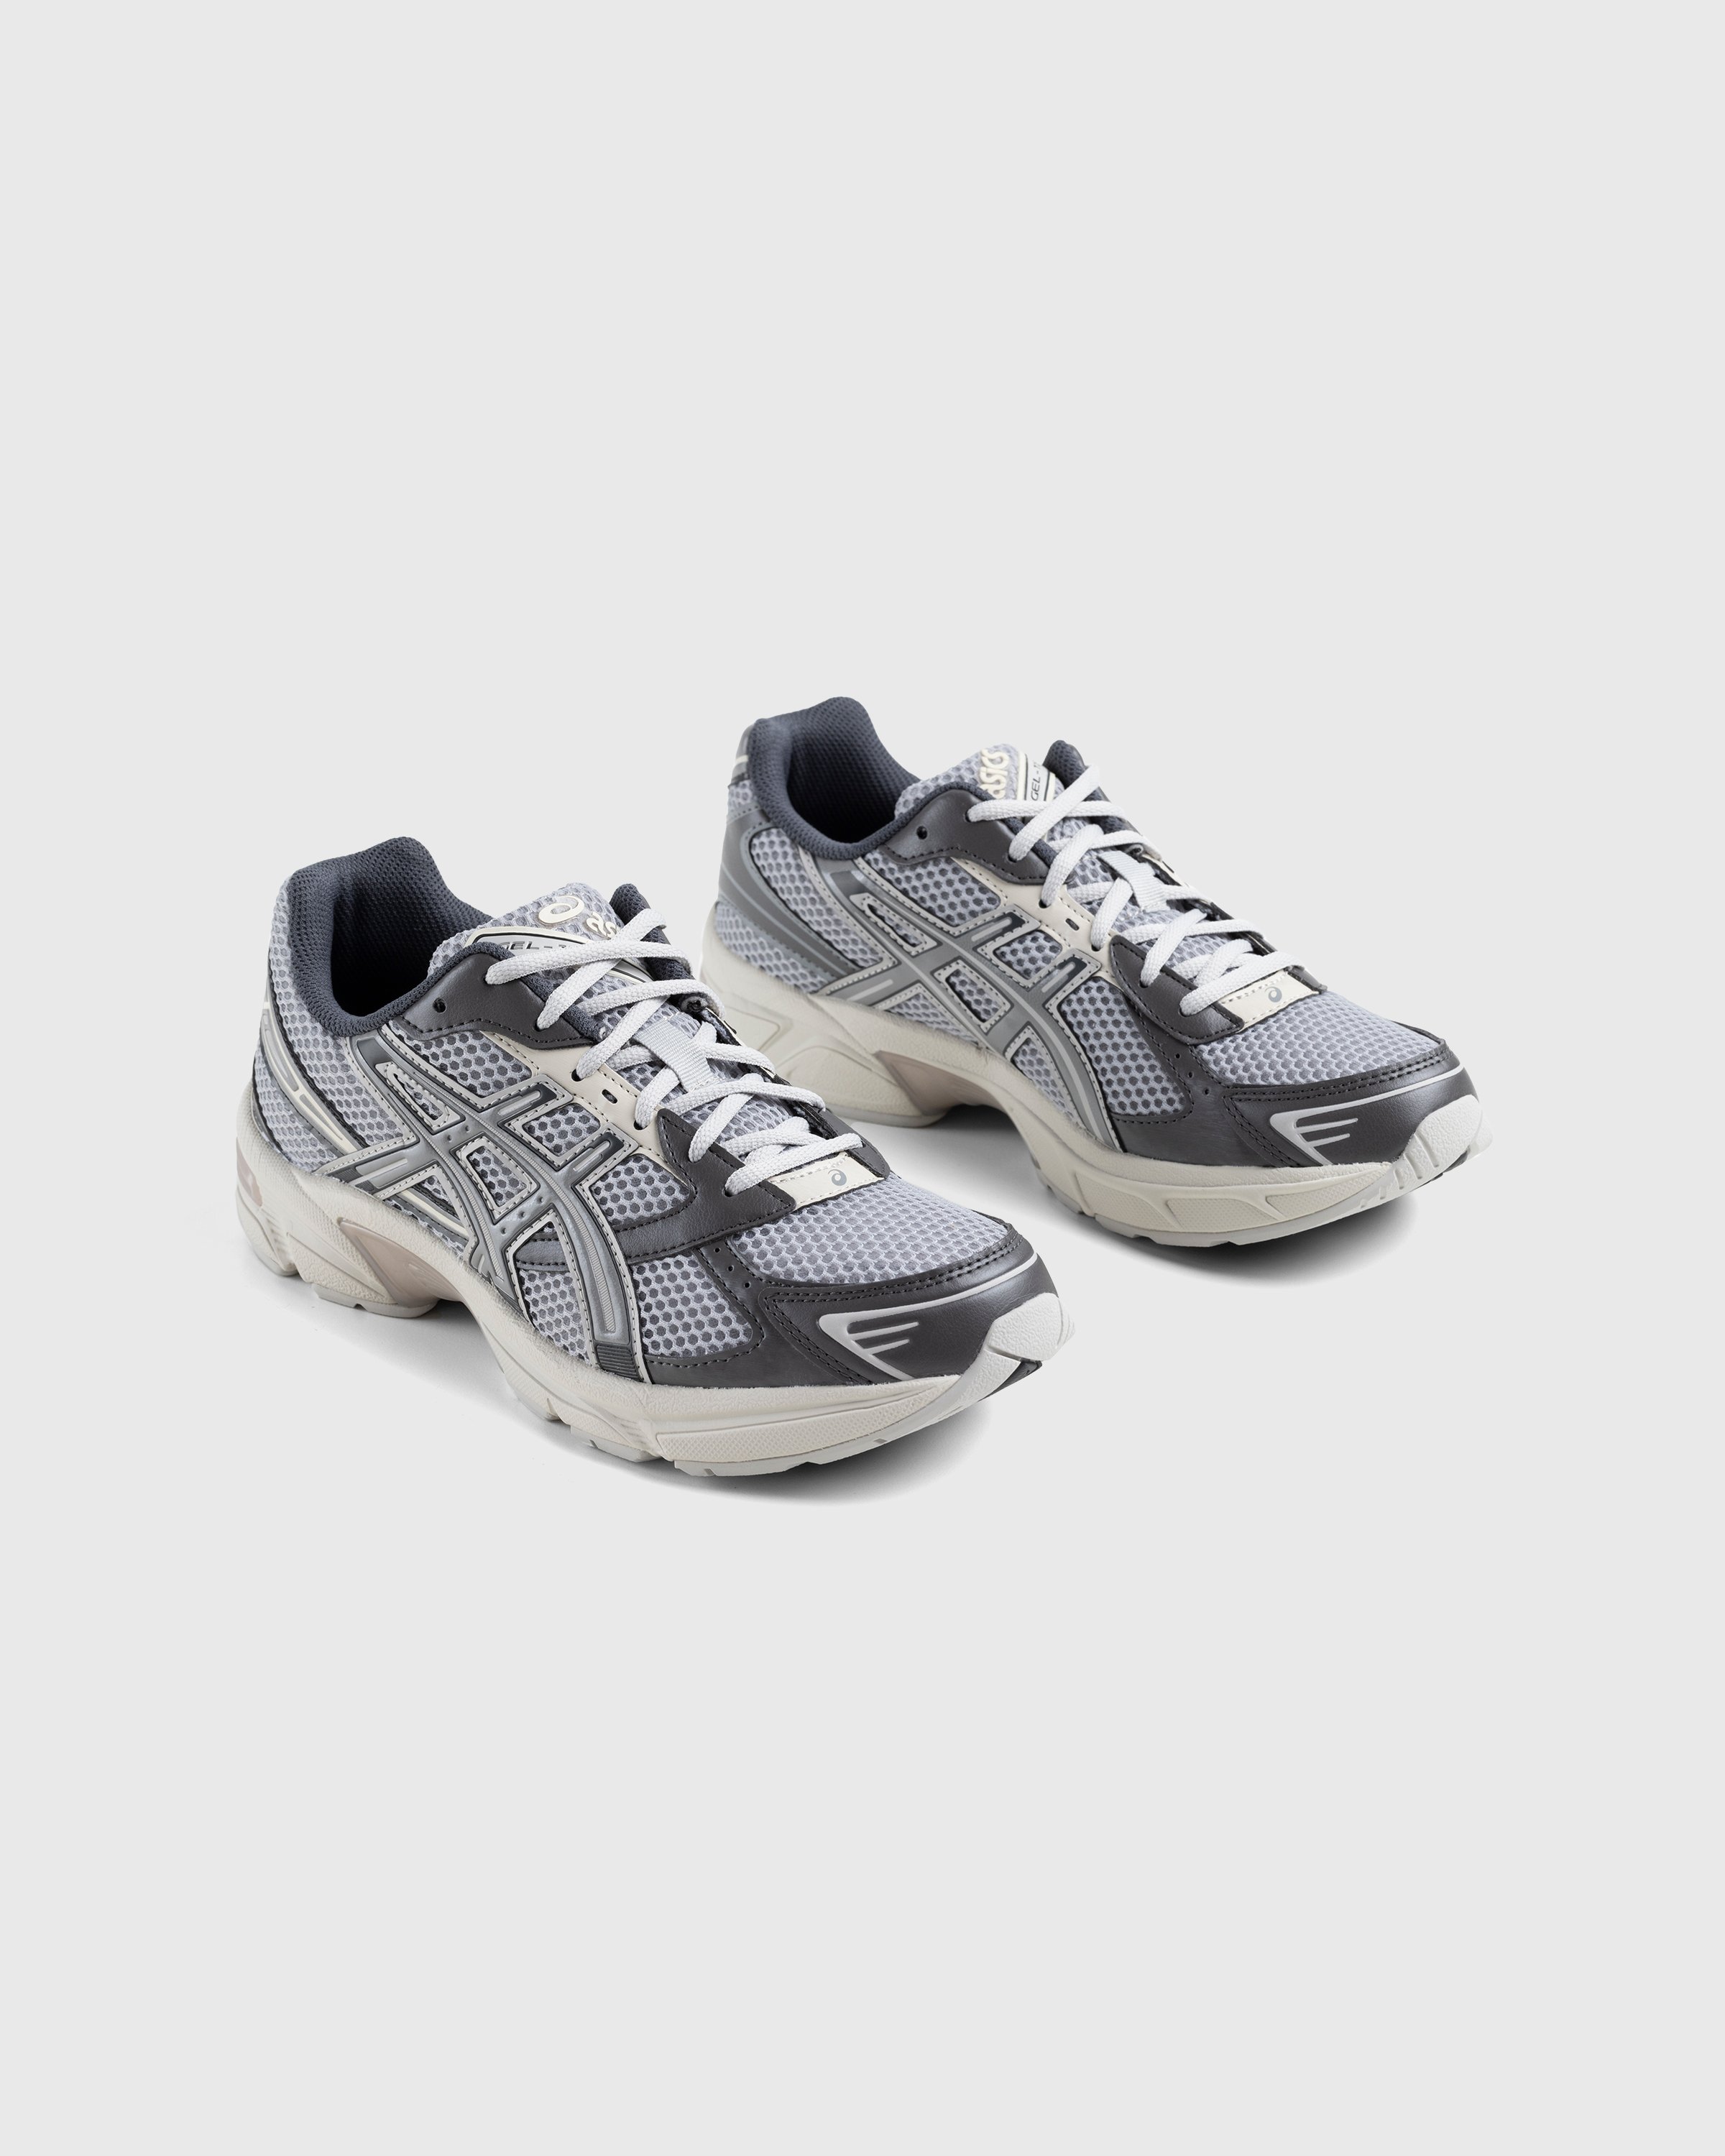 asics - Gel-1130 Oyster Grey/Clay Grey - Footwear - Grey - Image 2